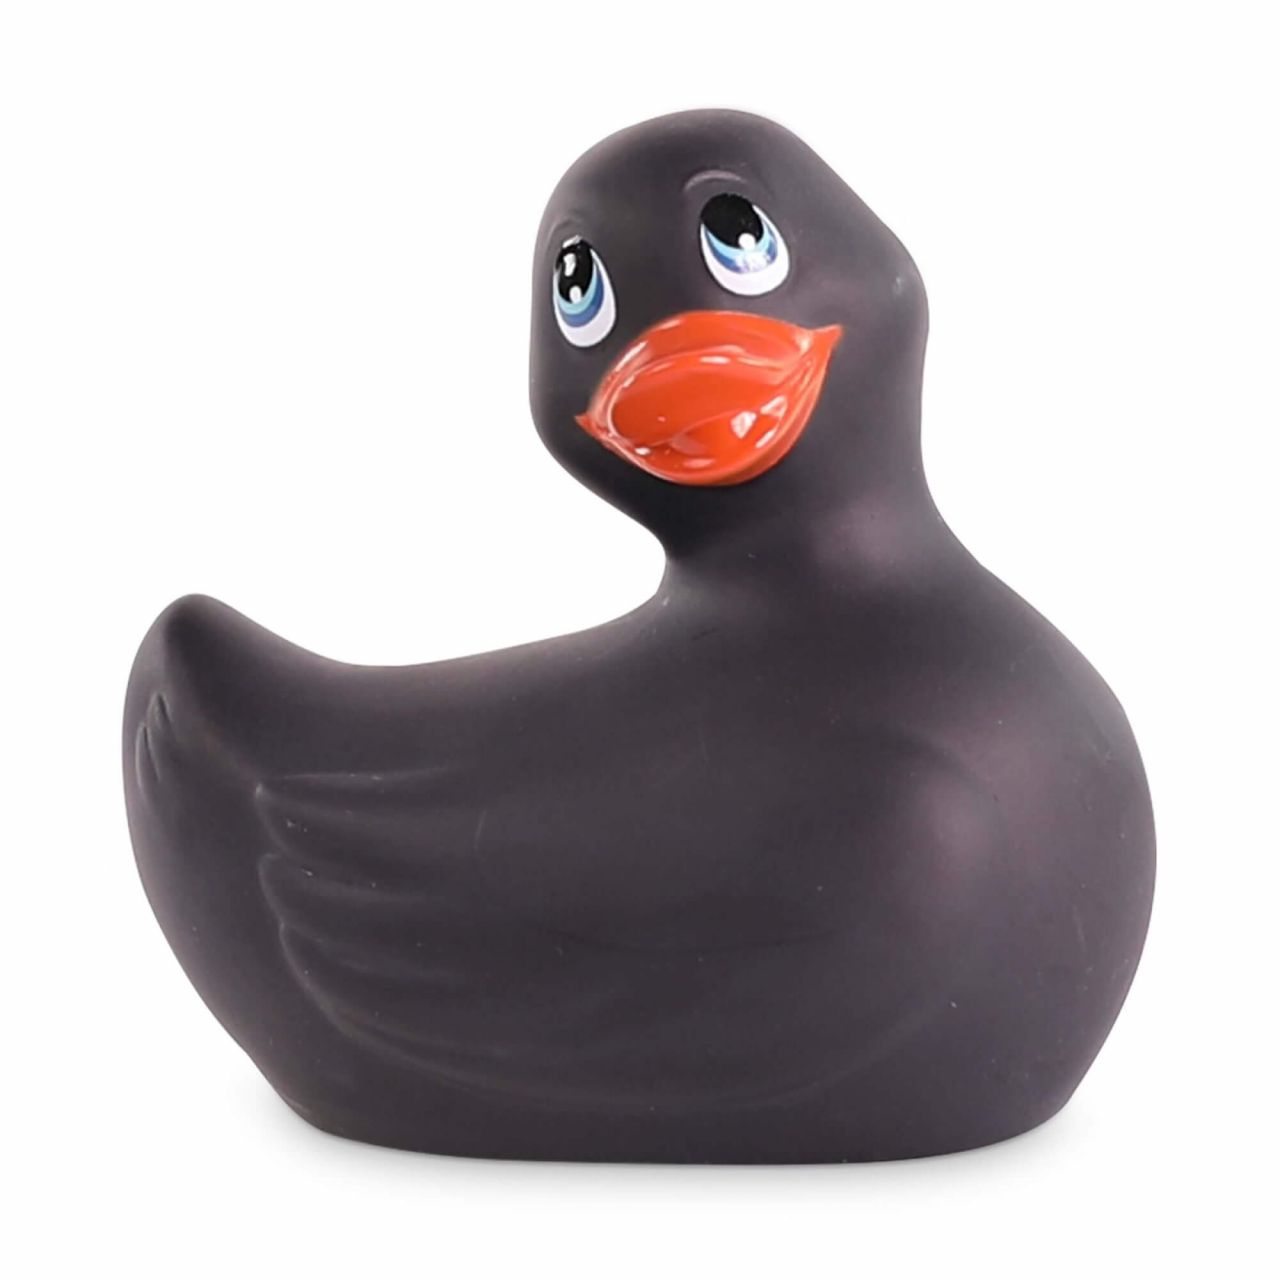 My Duckie Classic 2.0 - játékos kacsa vízálló csiklóvibrátor (fekete)